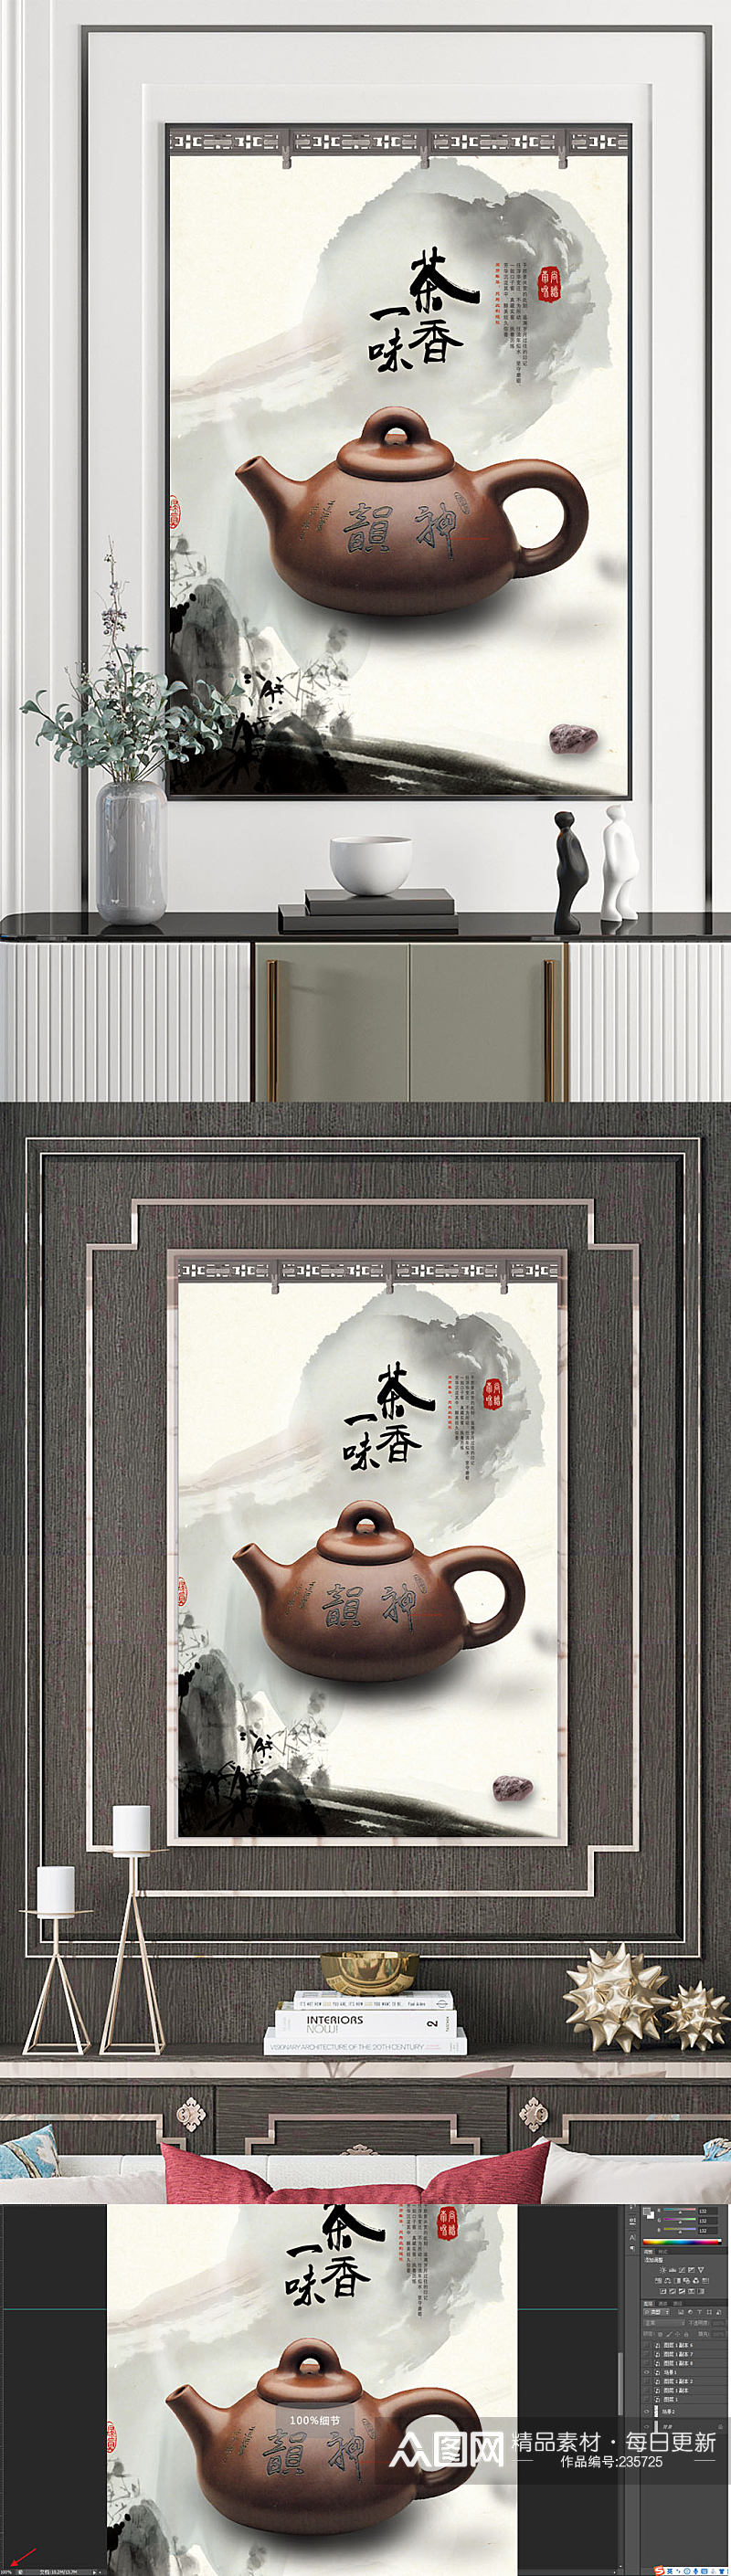 中国风茶香装饰画素材